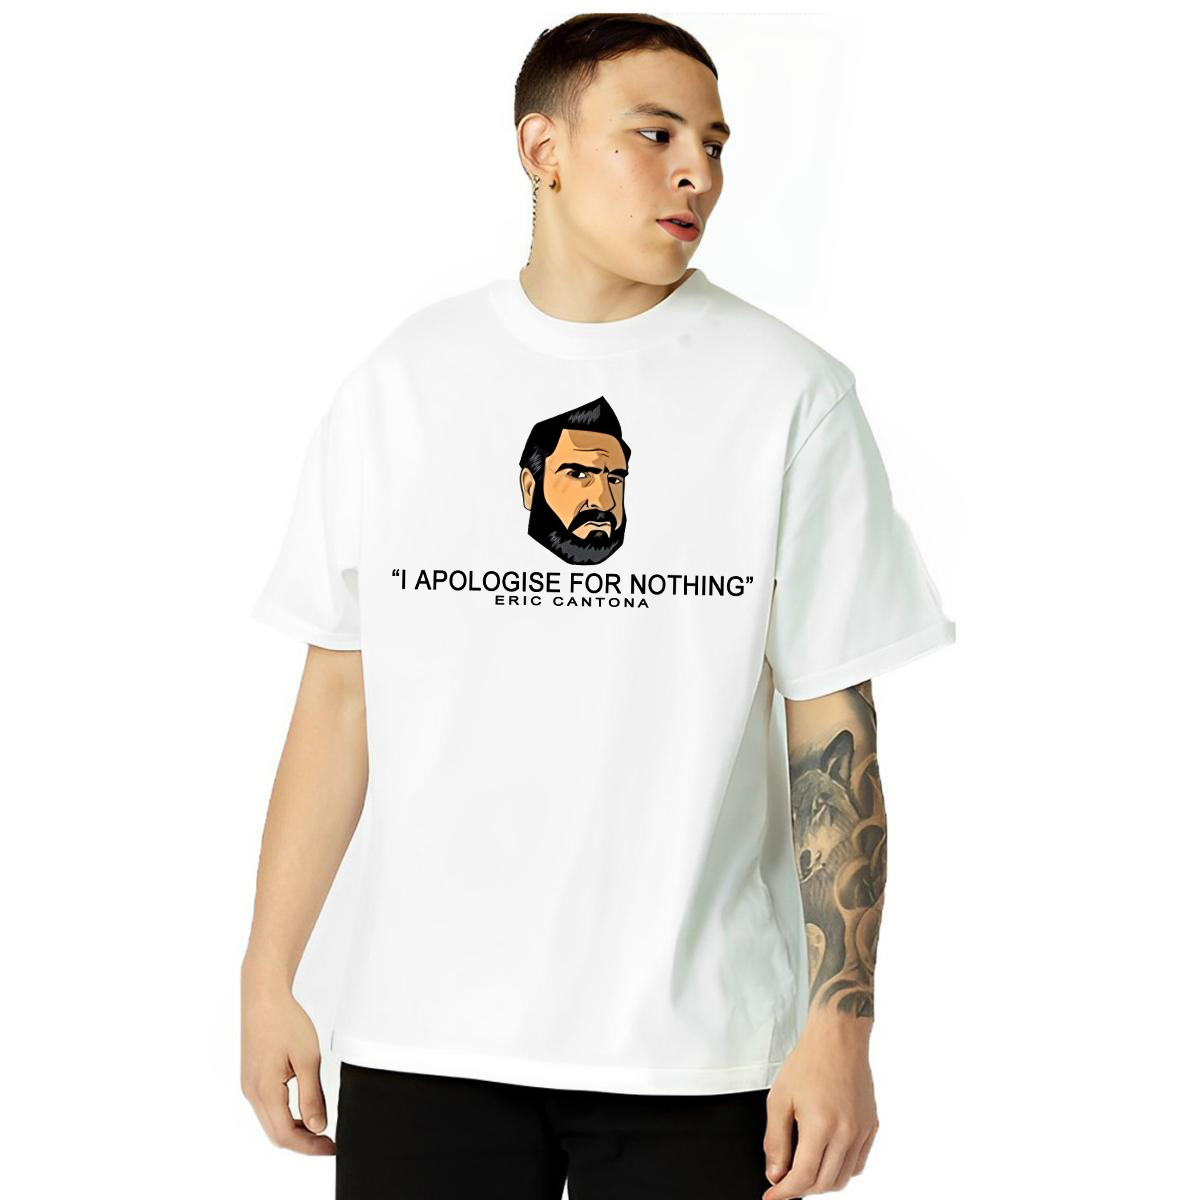 Eric Cantona Apology T-Shirt